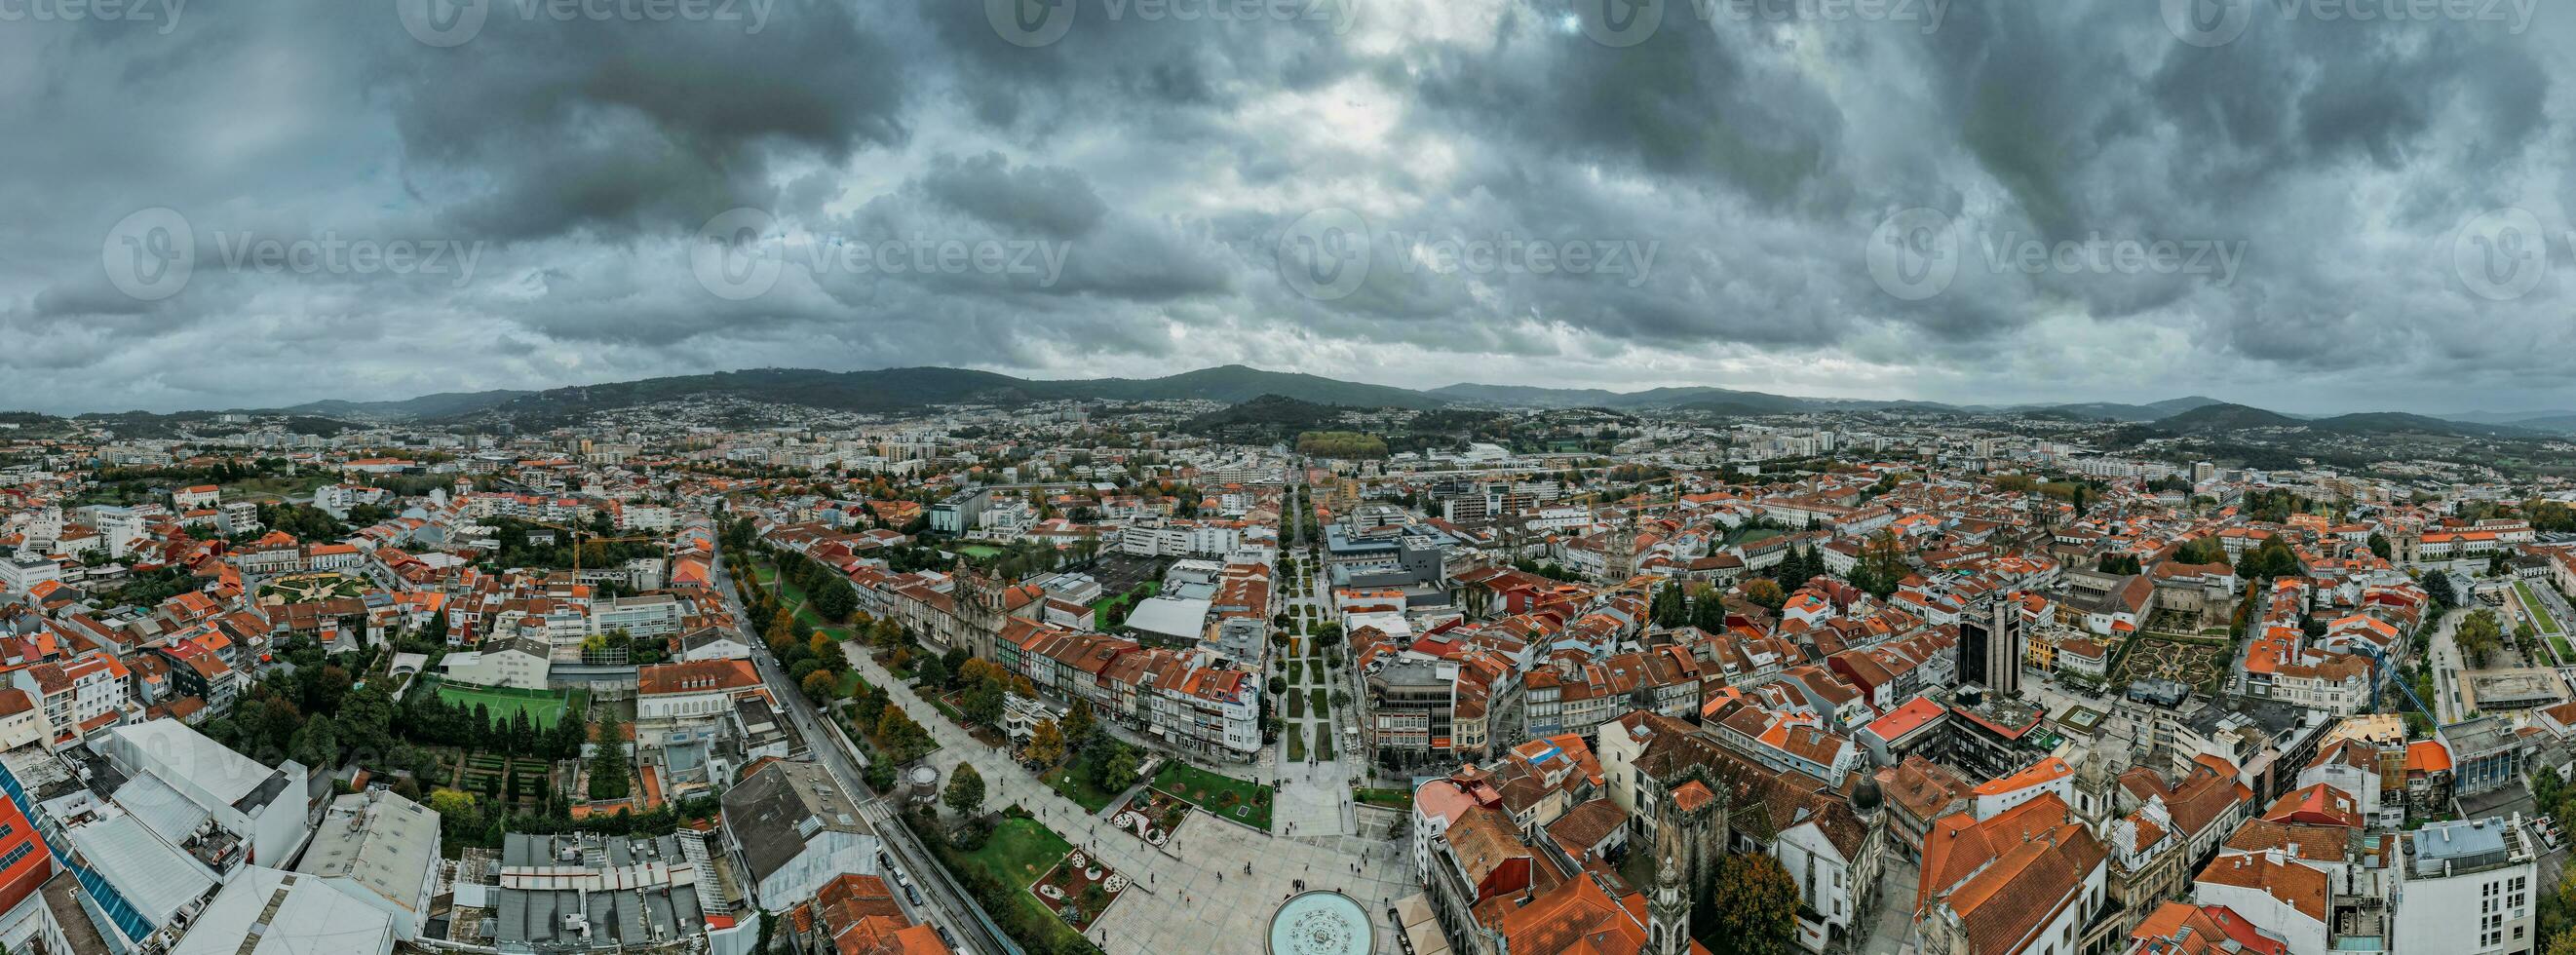 antenne dar panoramisch visie van historisch stad van braga in noordelijk Portugal foto